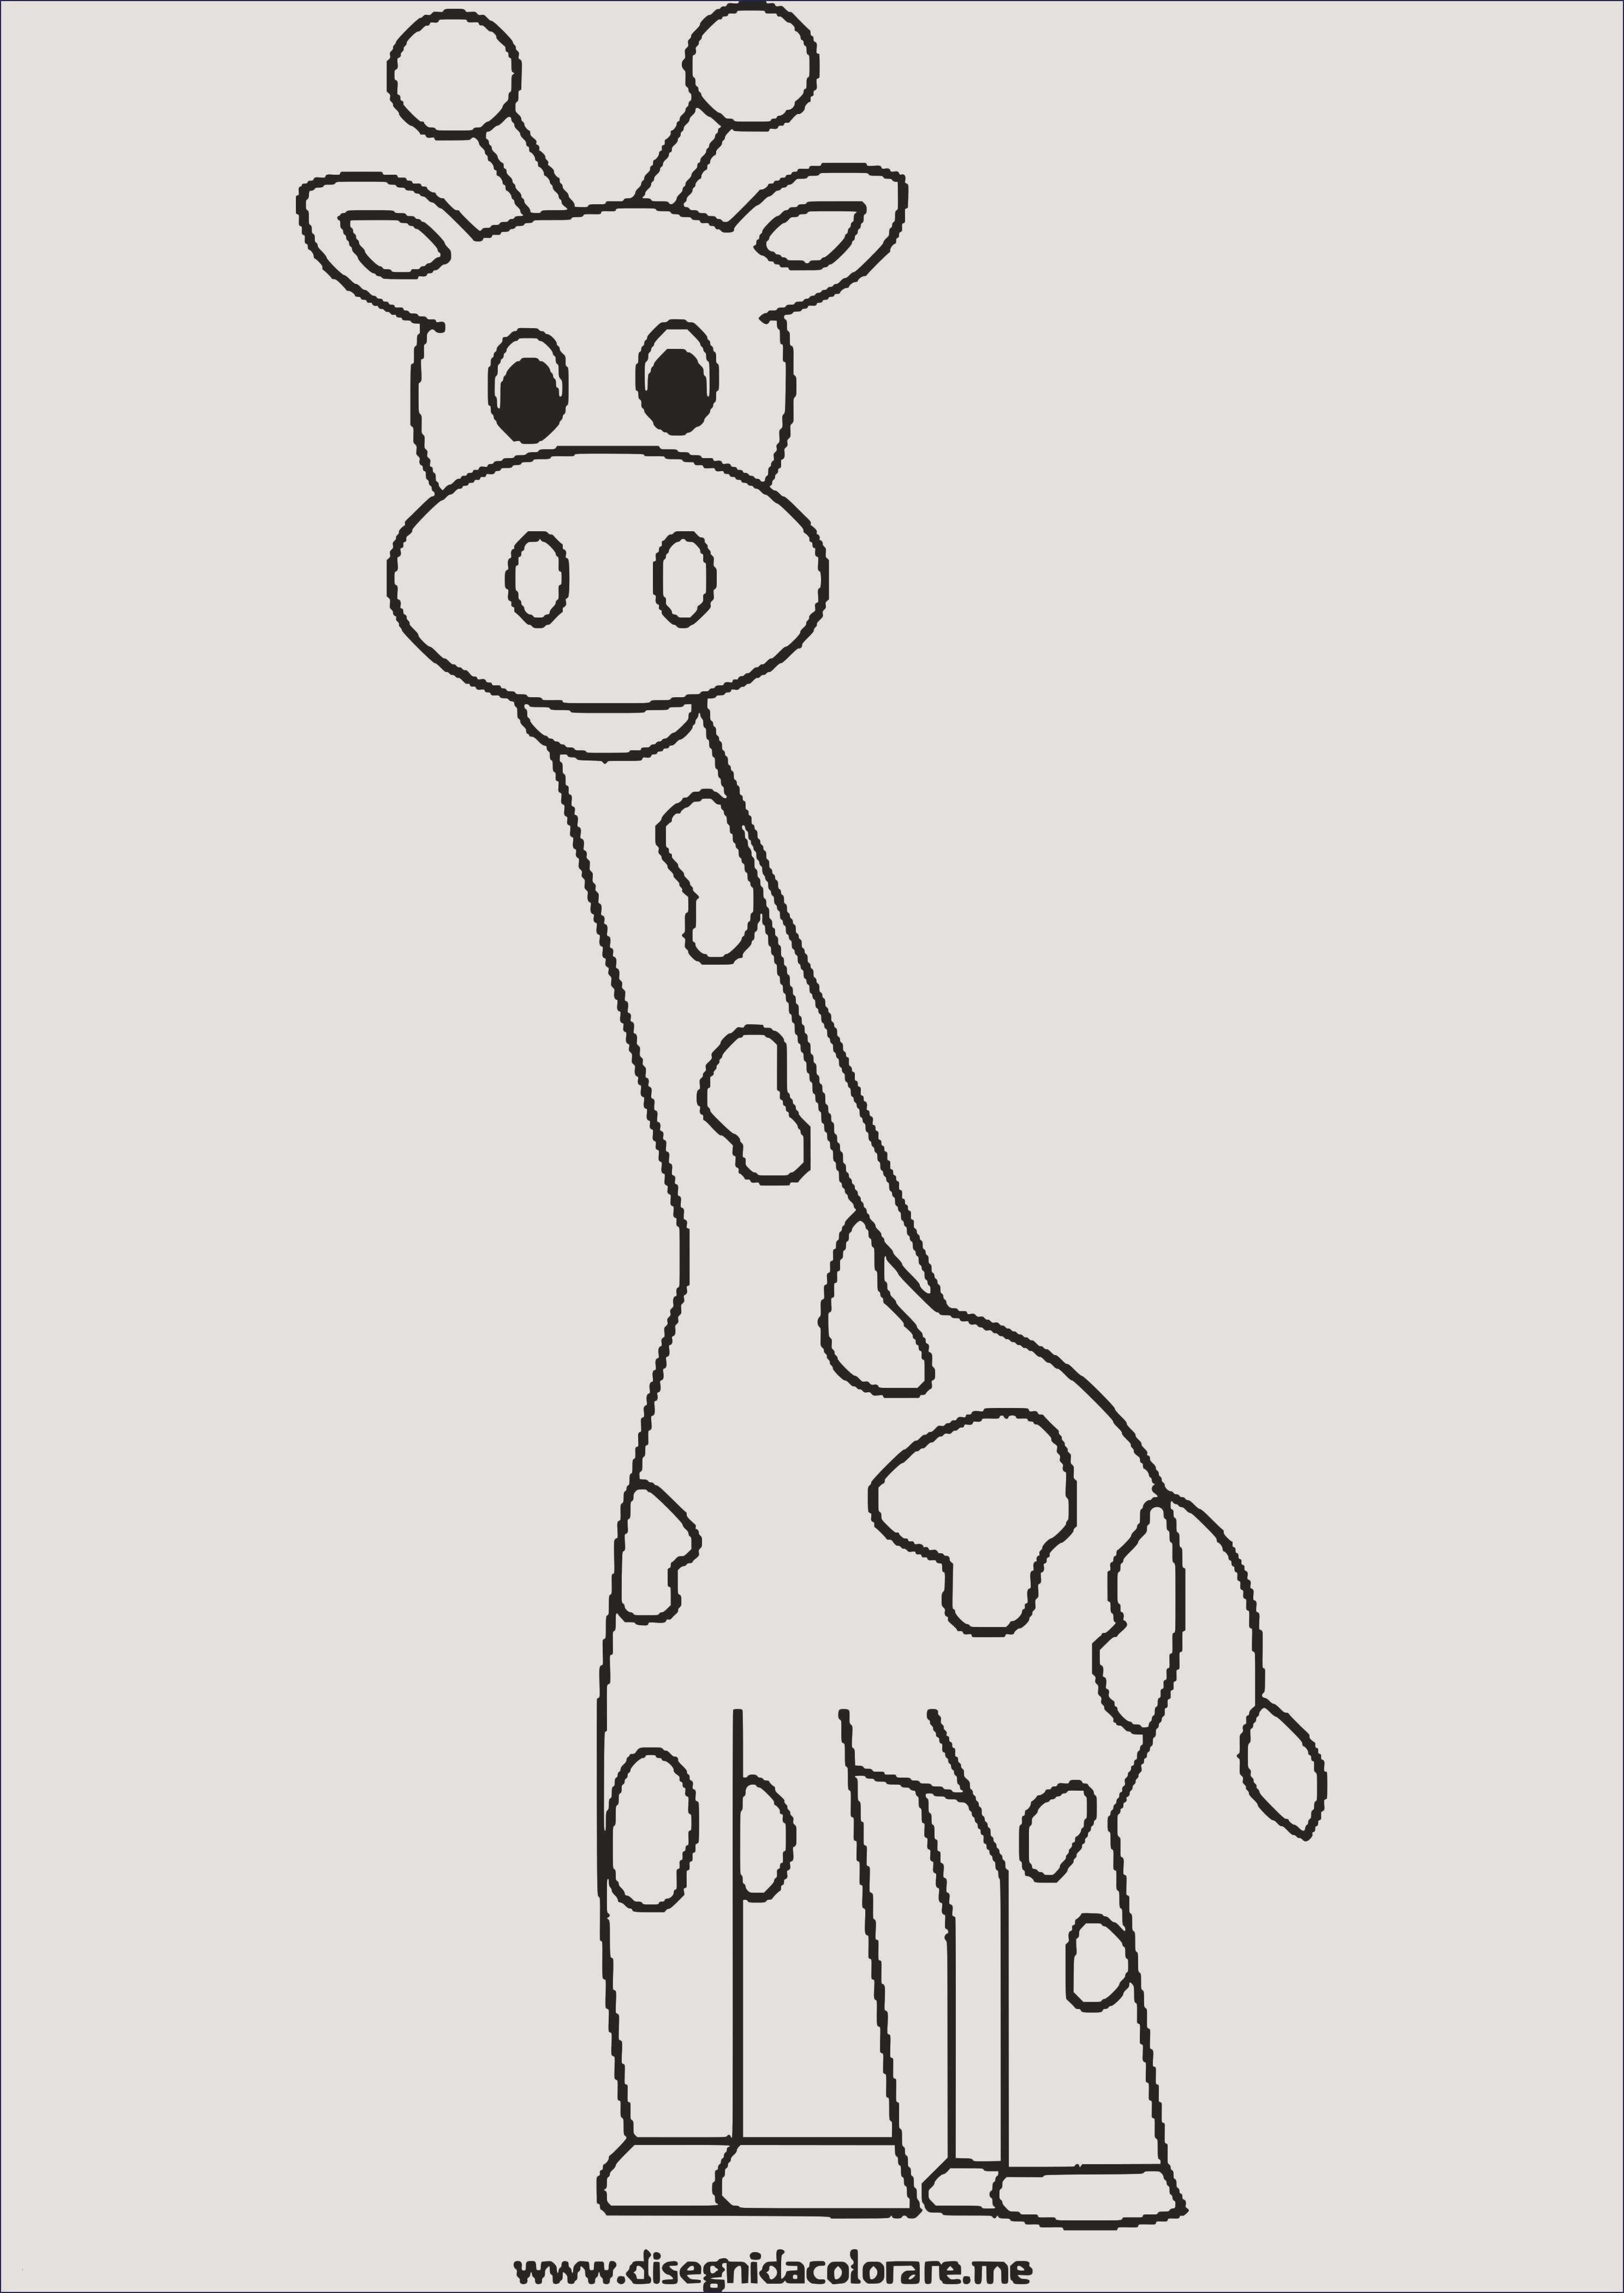 Жирафик раскраска для малышей